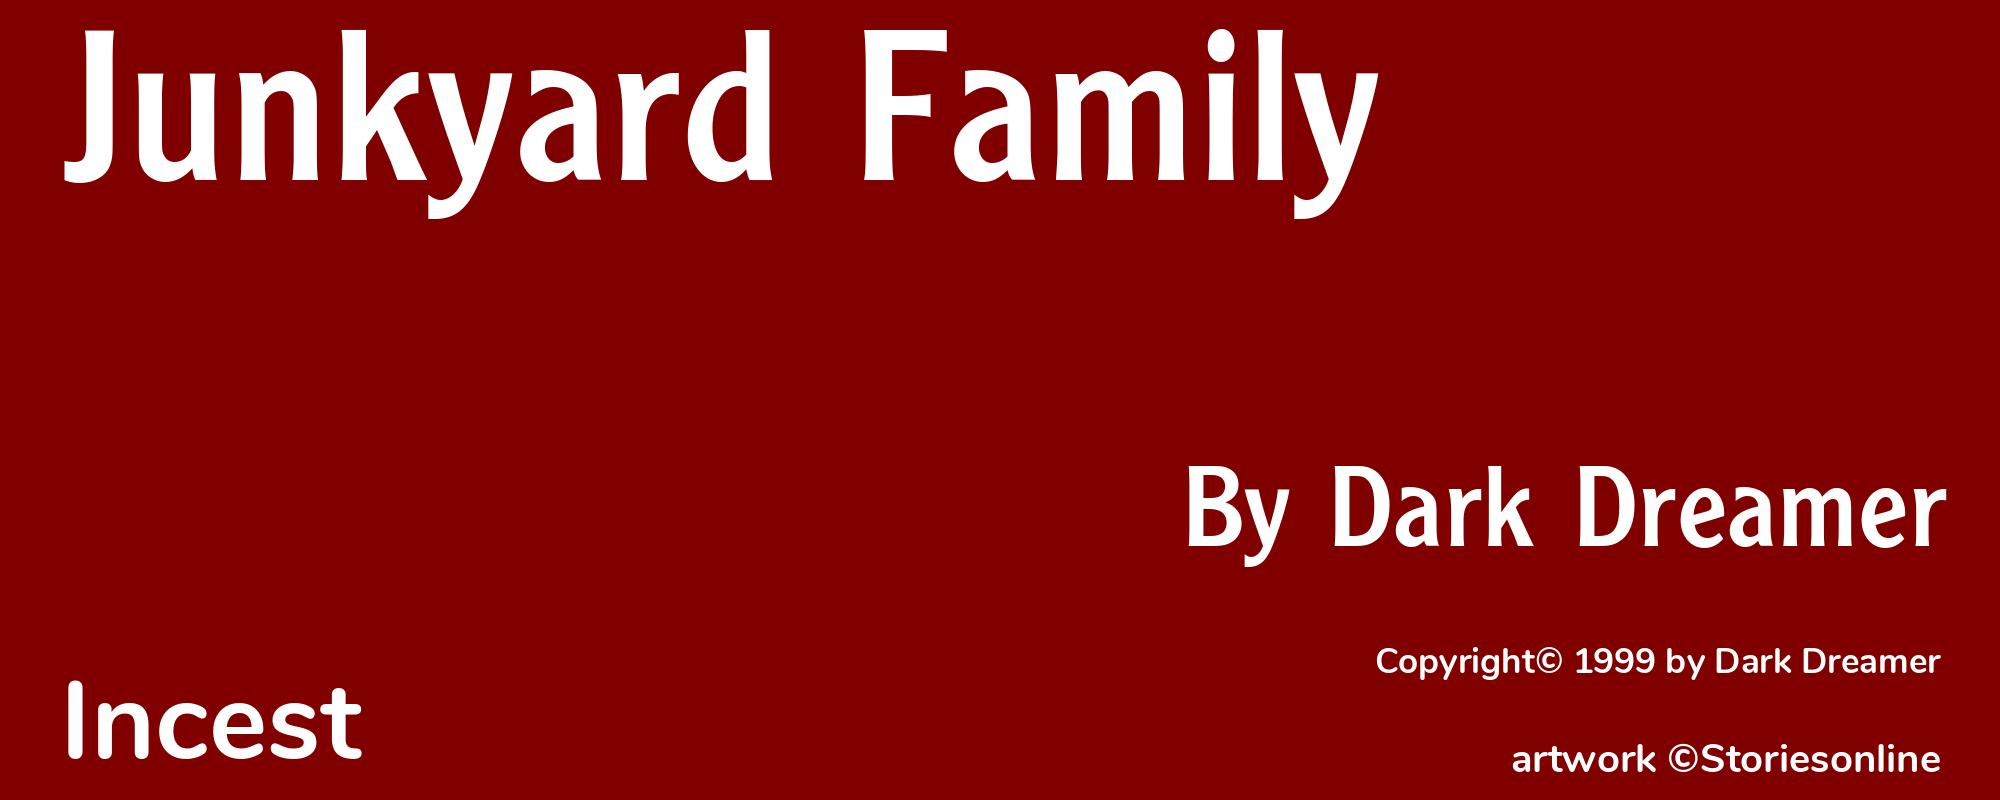 Junkyard Family - Cover